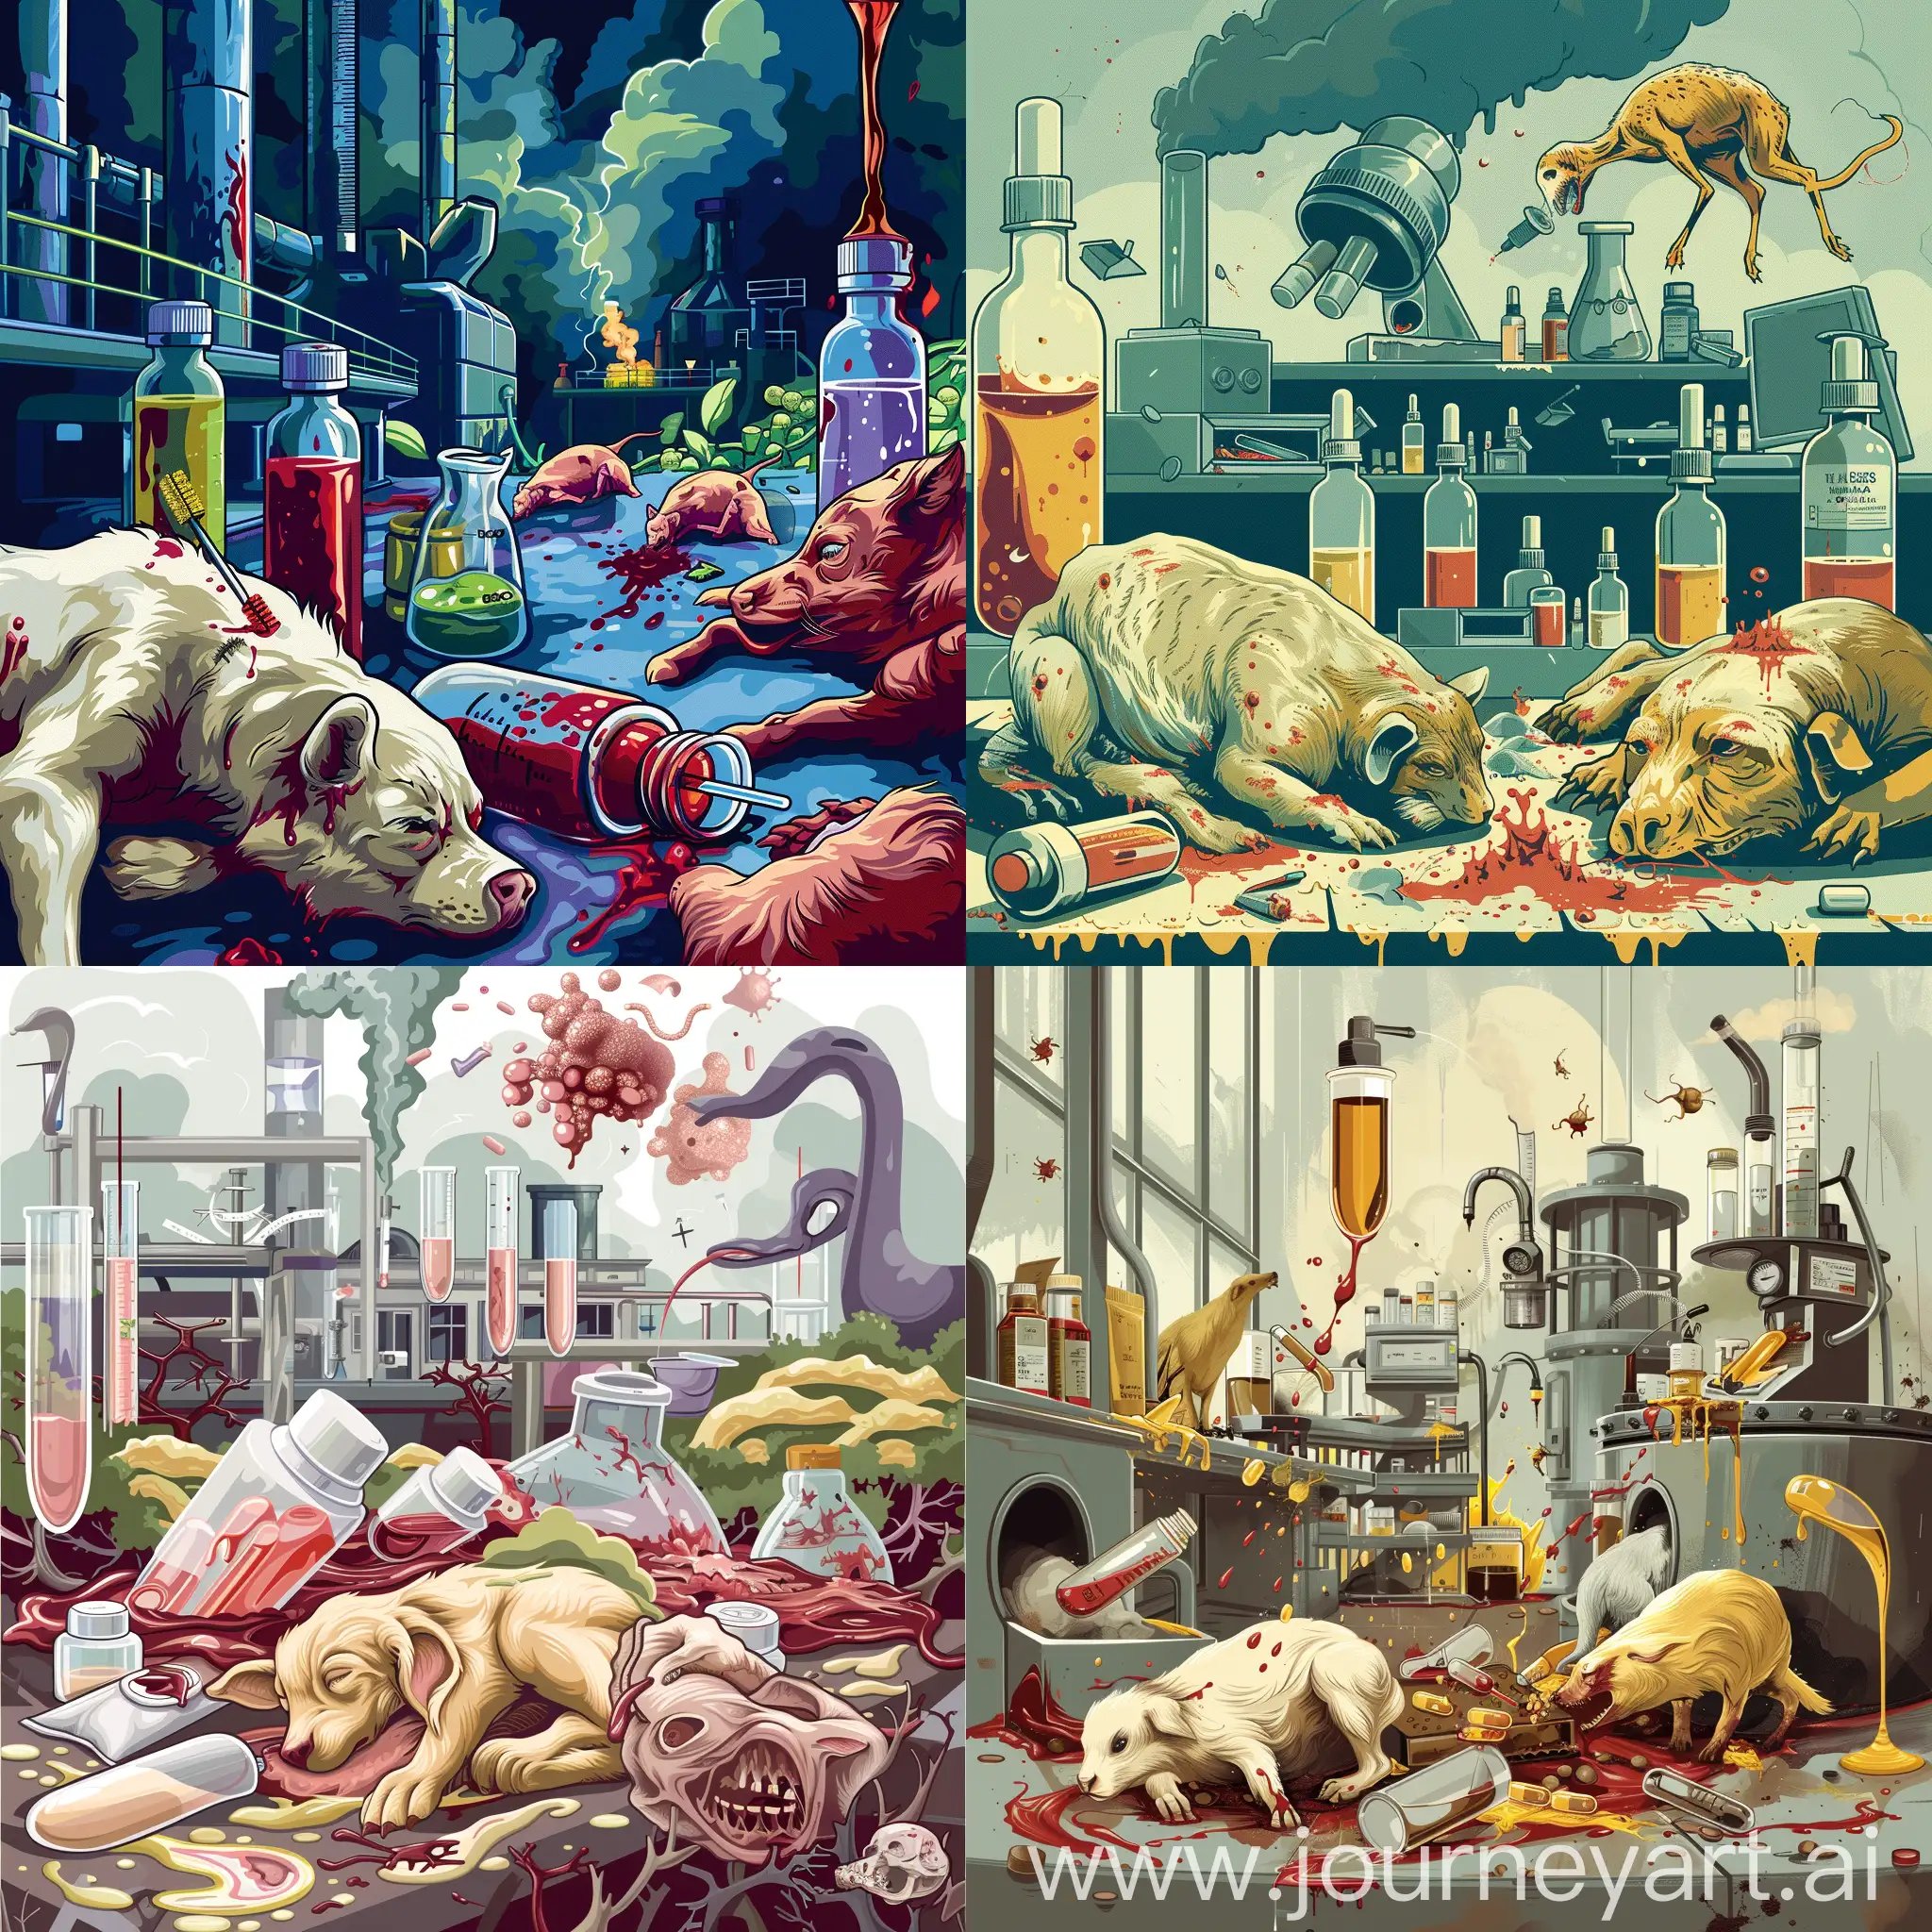 
Une illustration artistique dépeignant les dangers des produits chimiques dans les cosmétiques, avec un laboratoire en arrière-plan et des animaux en souffrance.
